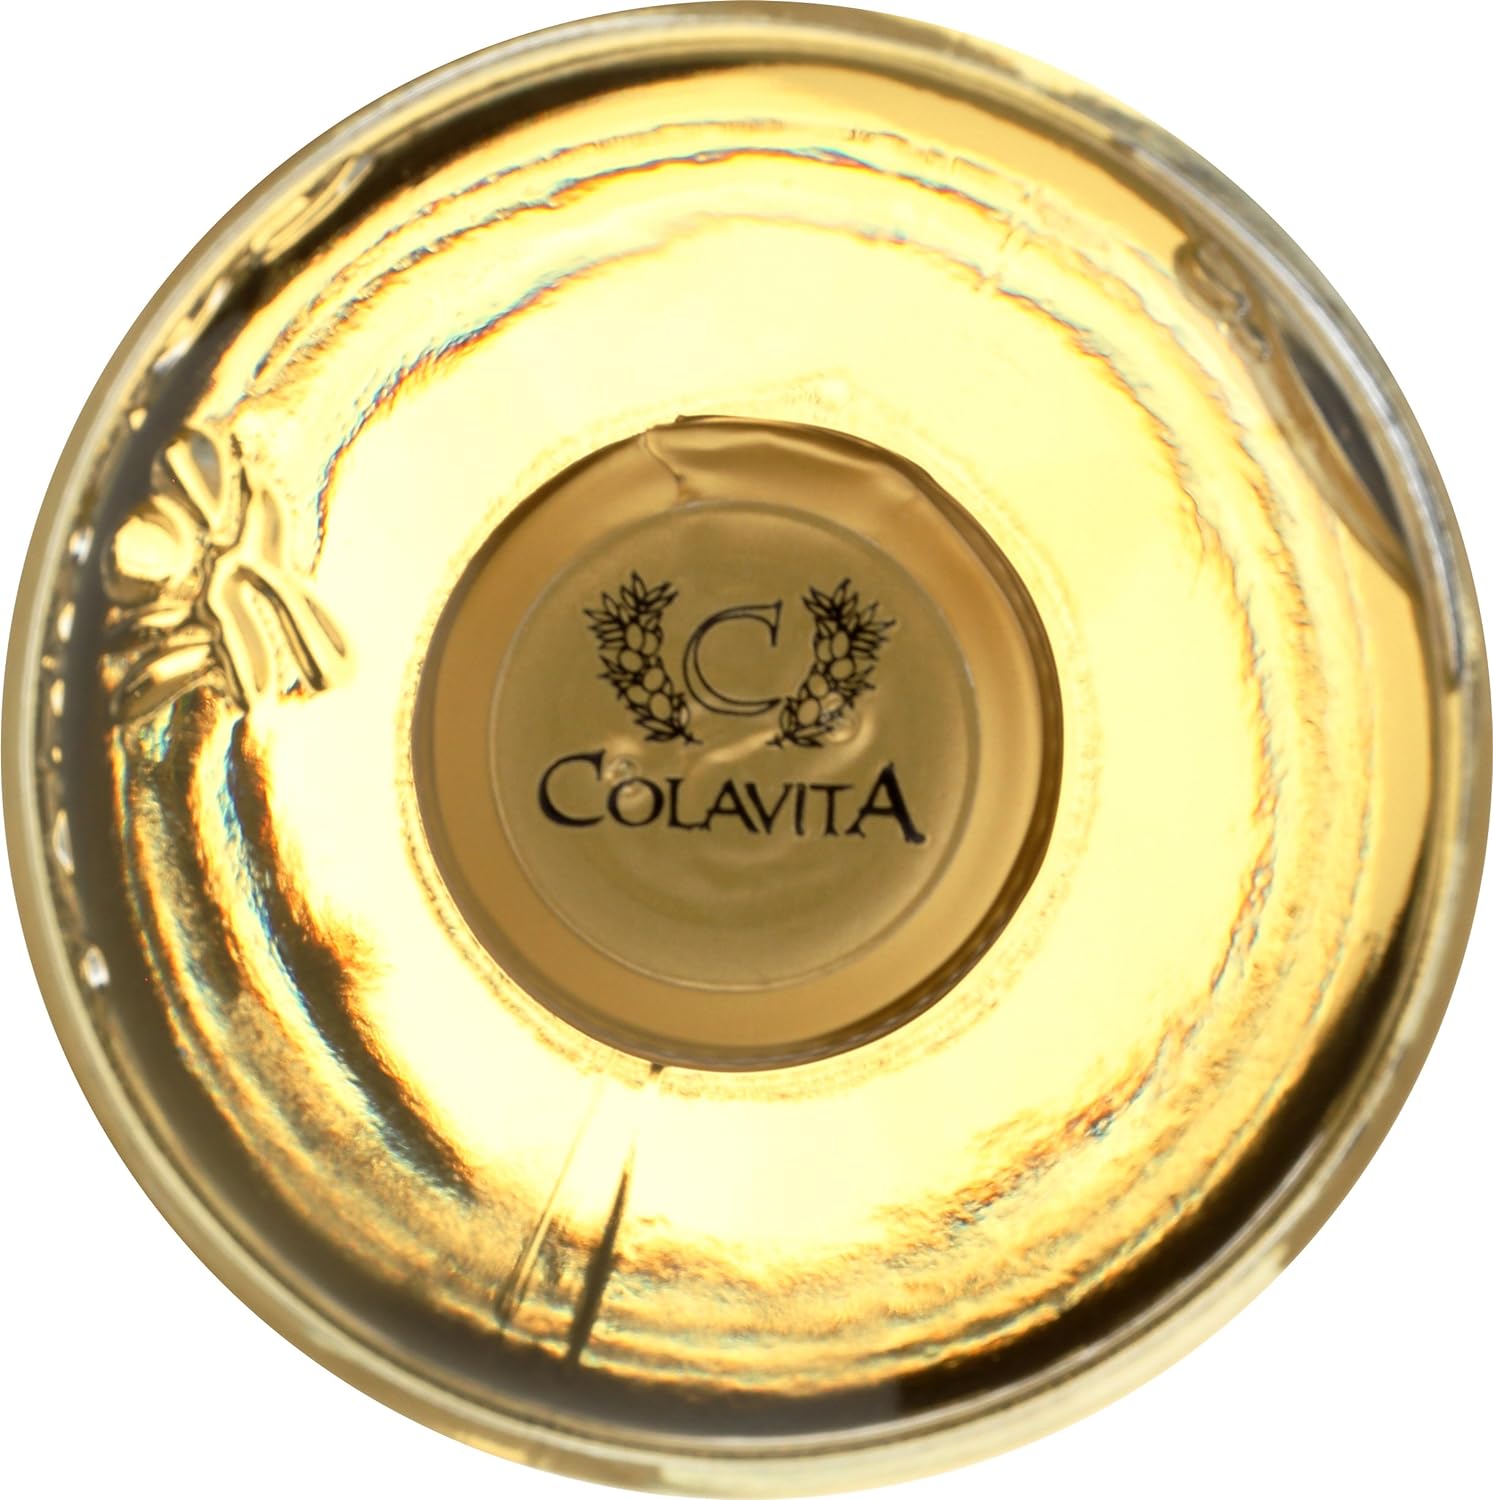 Colavita White Balsamic Vinegar, 17 Ounce : Everything Else